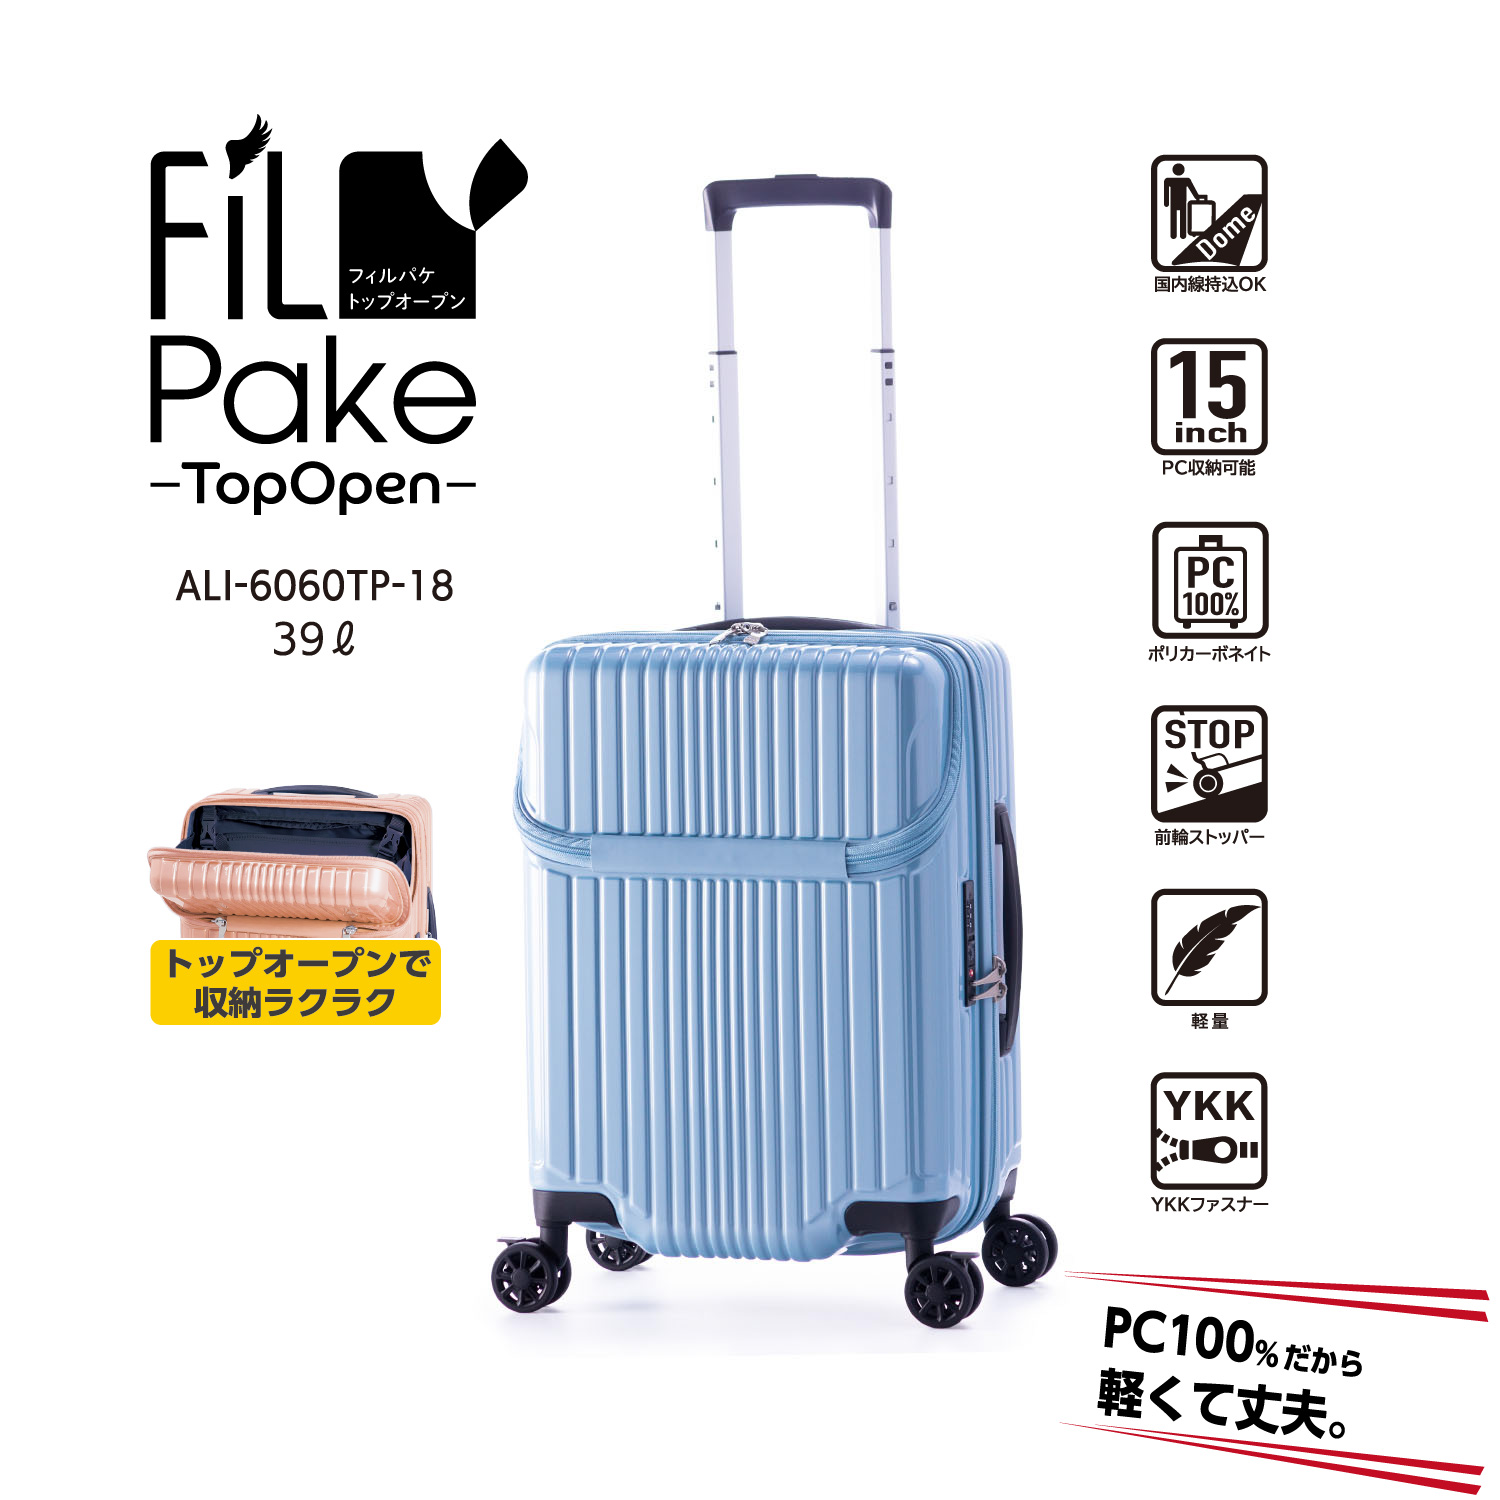 機内持ち込みサイズ | アジア・ラゲージ 公式サイト | Asia Luggage Inc.